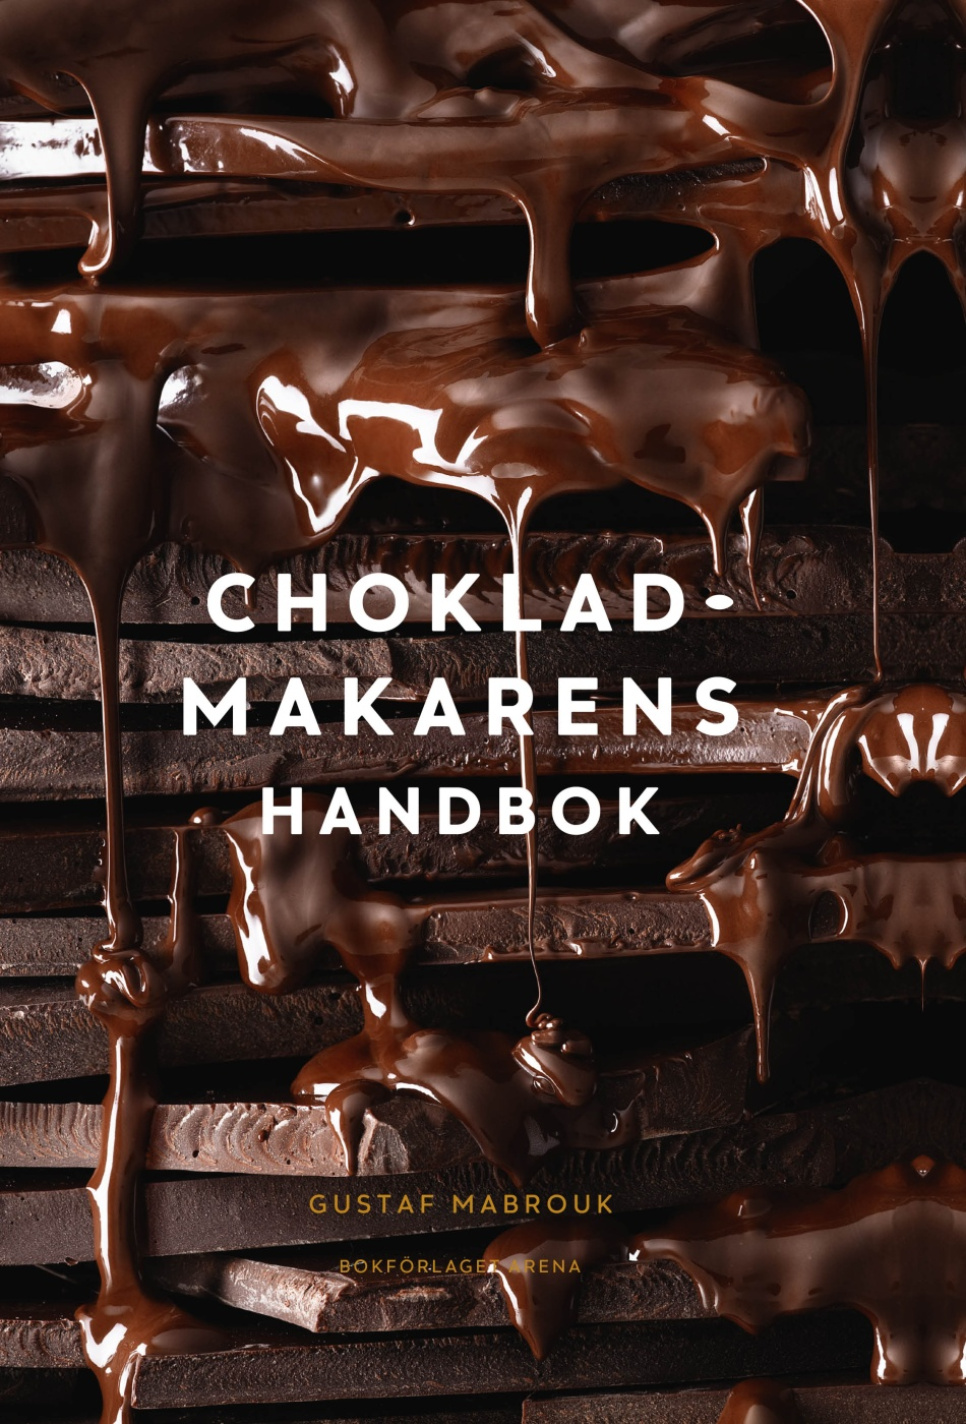 Chokladmakarens handbok - Gustaf Mabrouk w grupie Gotowanie / Książki kucharskie / Przystawki i desery w The Kitchen Lab (1355-21270)